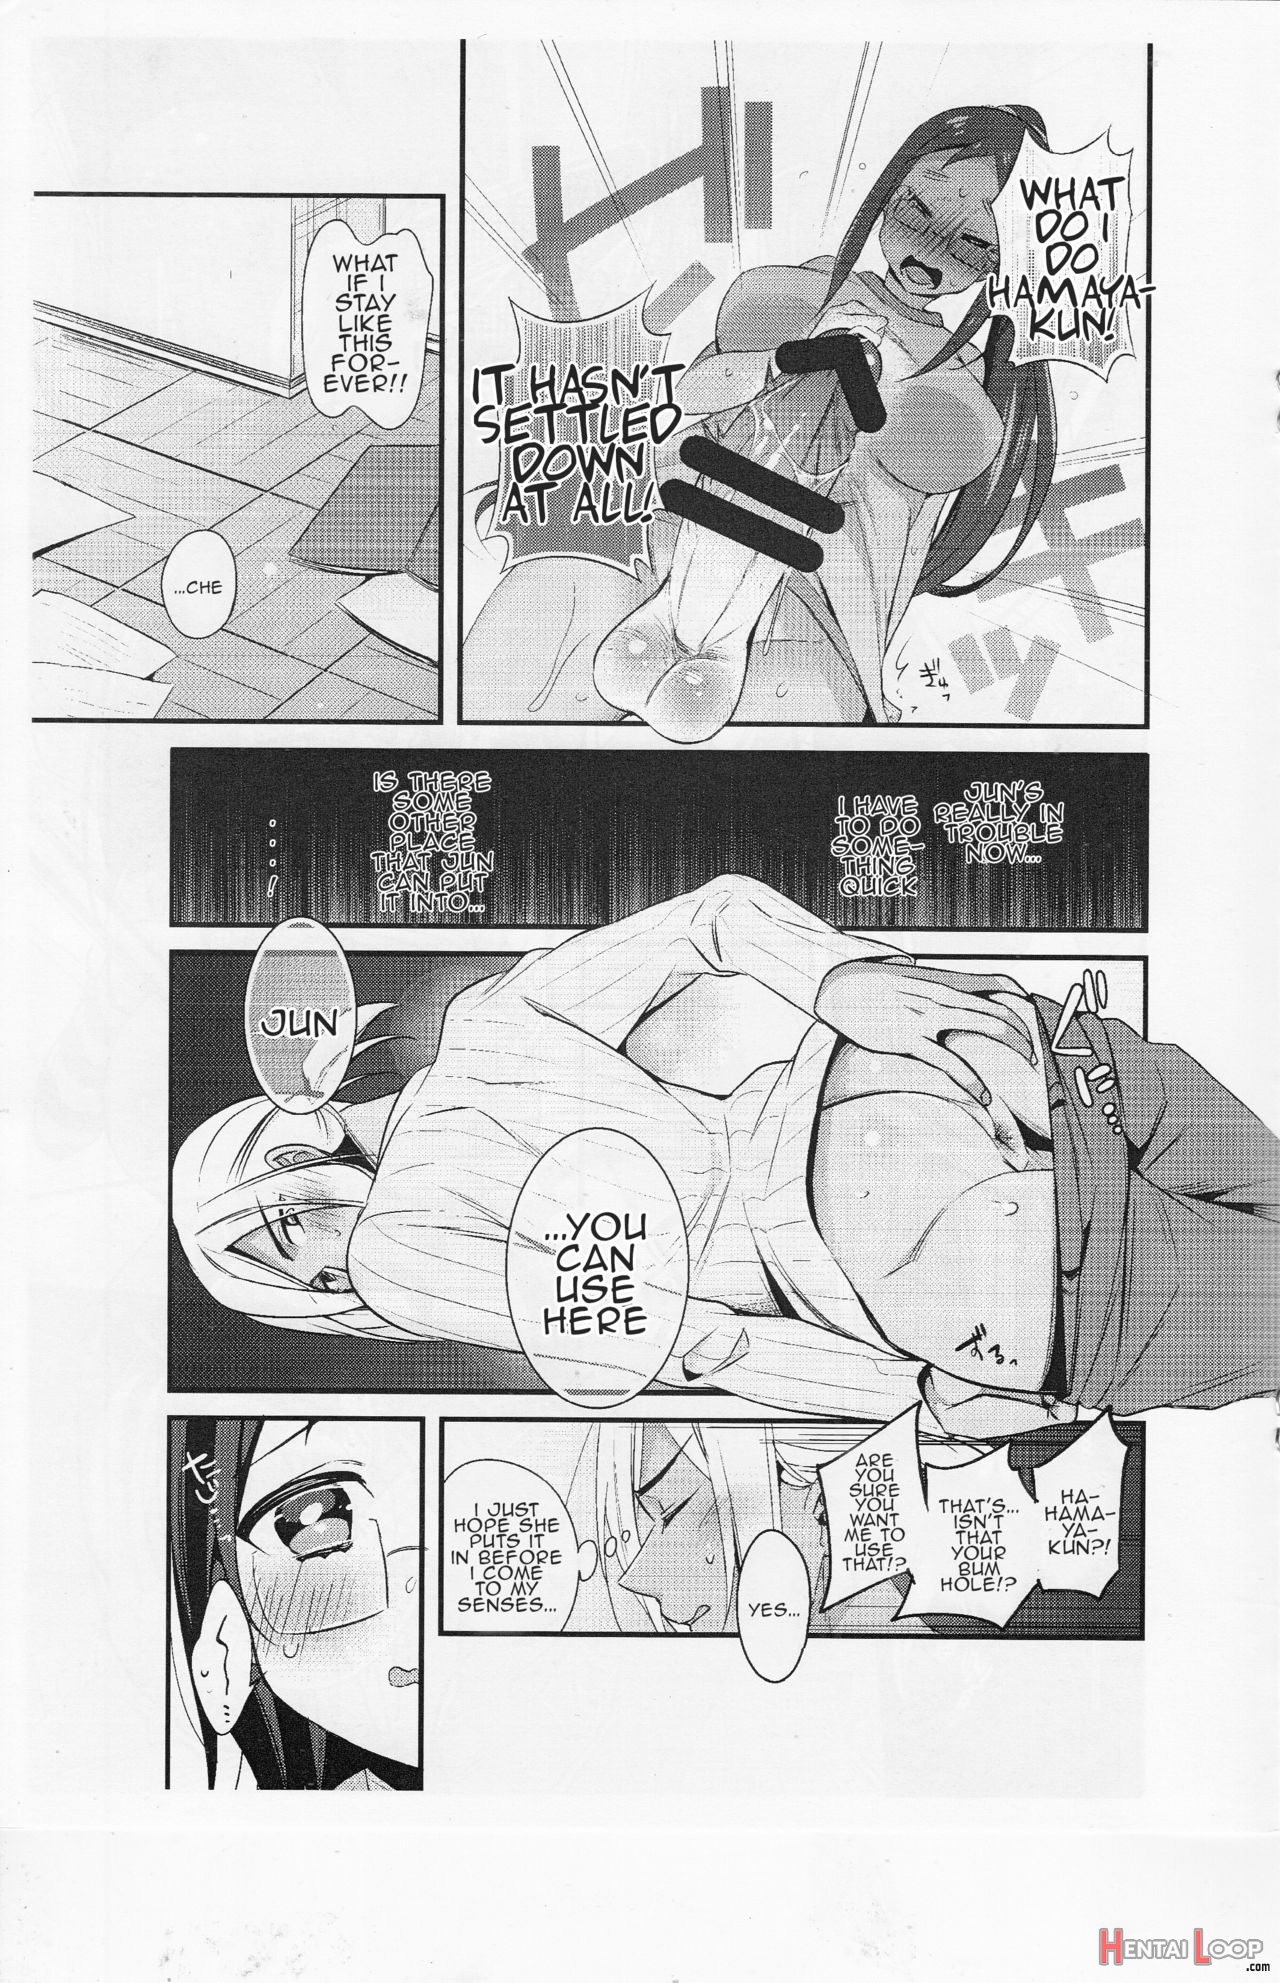 Tasukete! Hayama-kun page 7